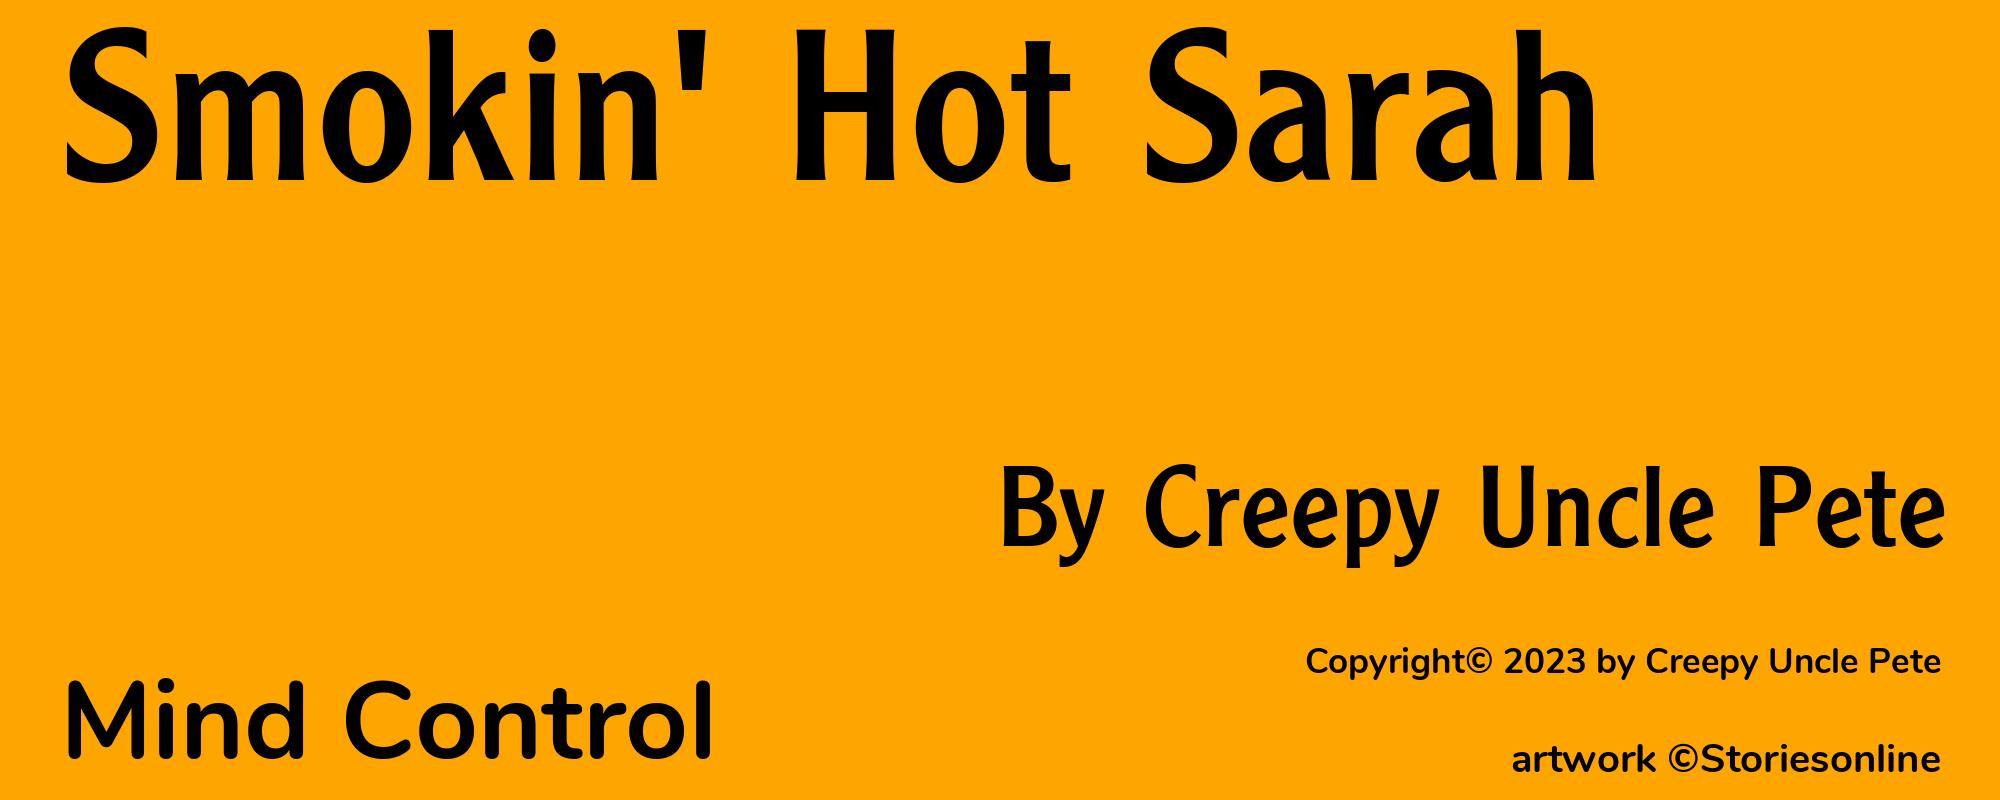 Smokin' Hot Sarah - Cover